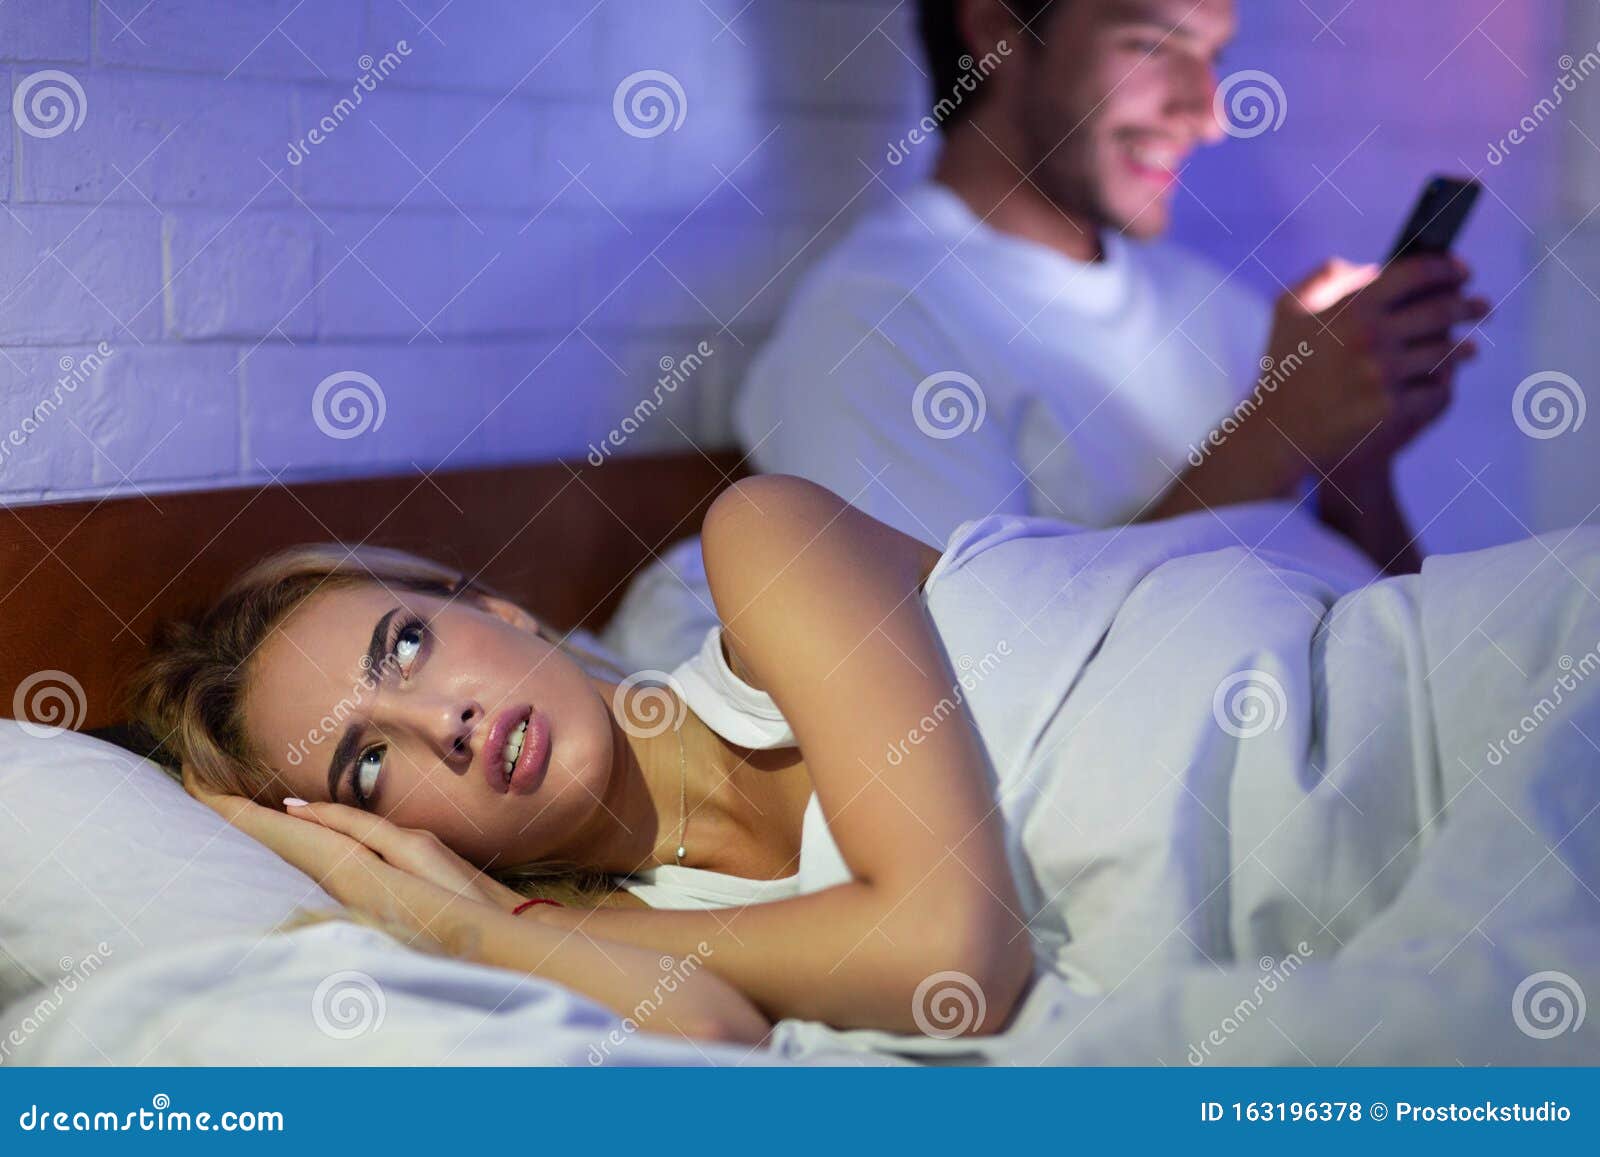 Измена жене в постели. Девушка с телефоном в кровати. Девушка лежит с телефоном. Женщина смотрит в телефон мужа.